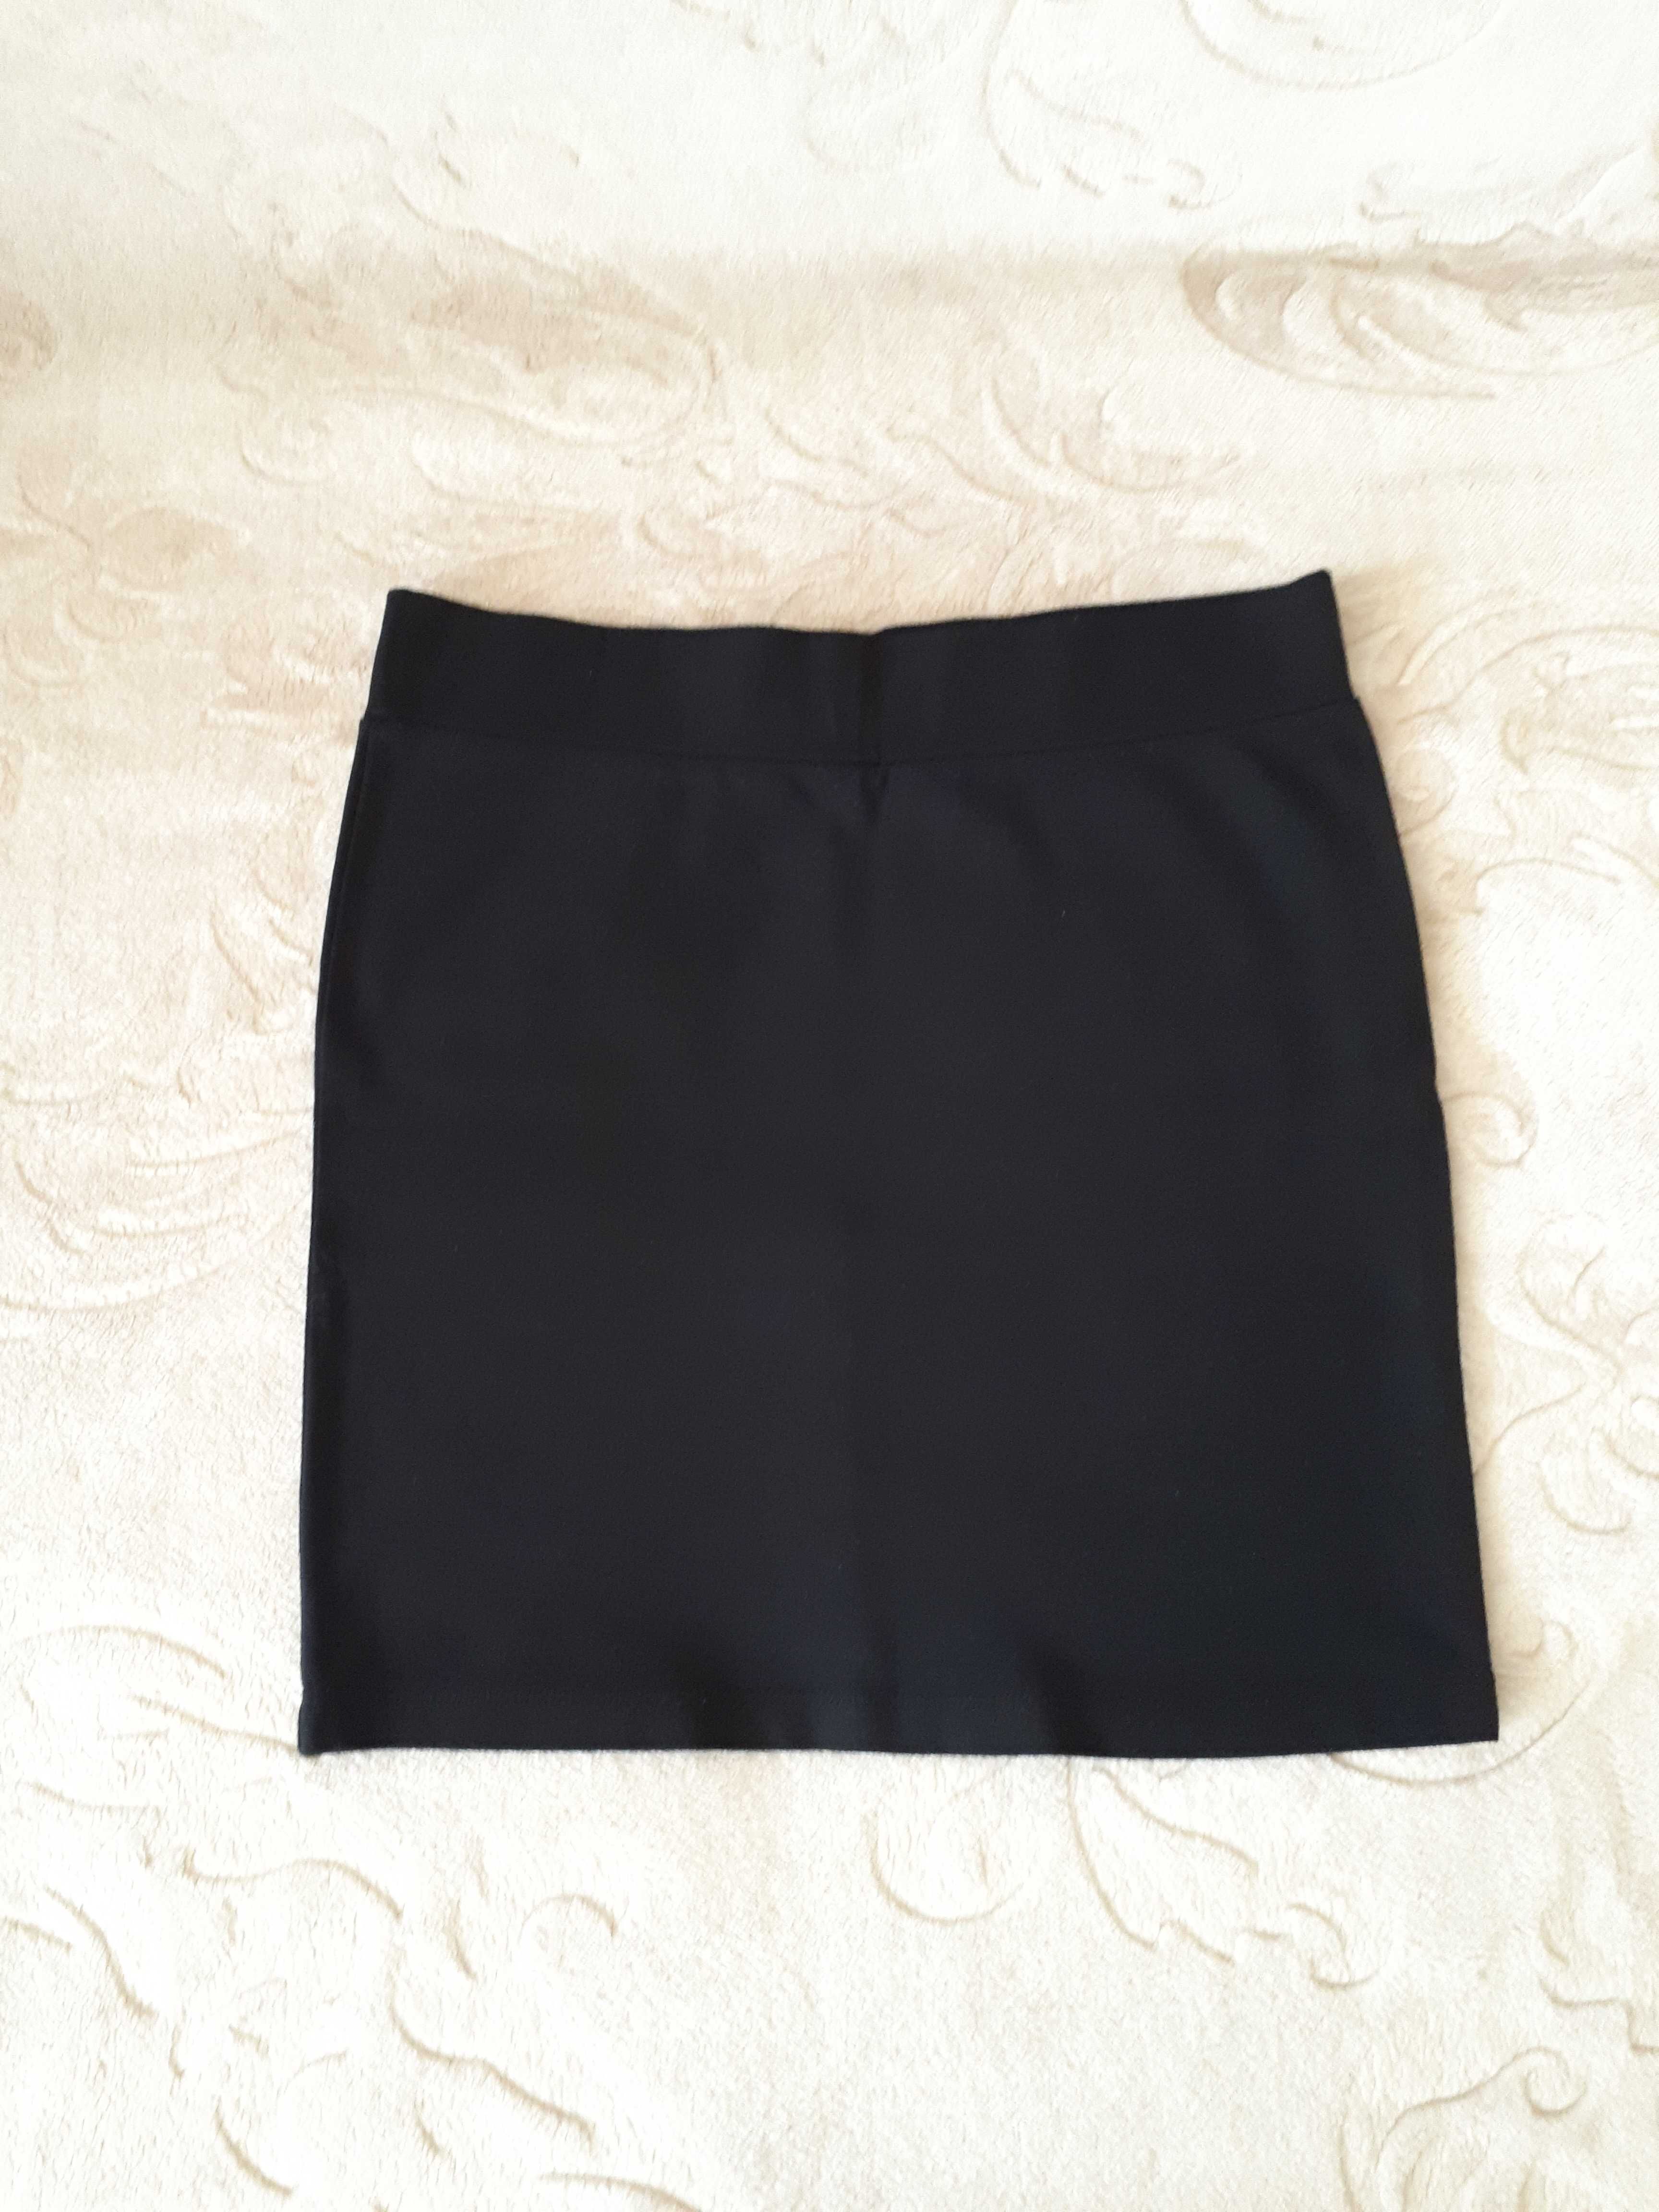 Czarna spódnica materiałowa roz. M - mała czarna